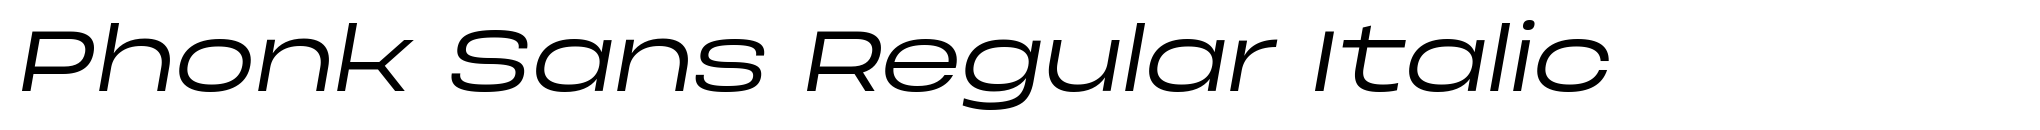 Phonk Sans Regular Italic image